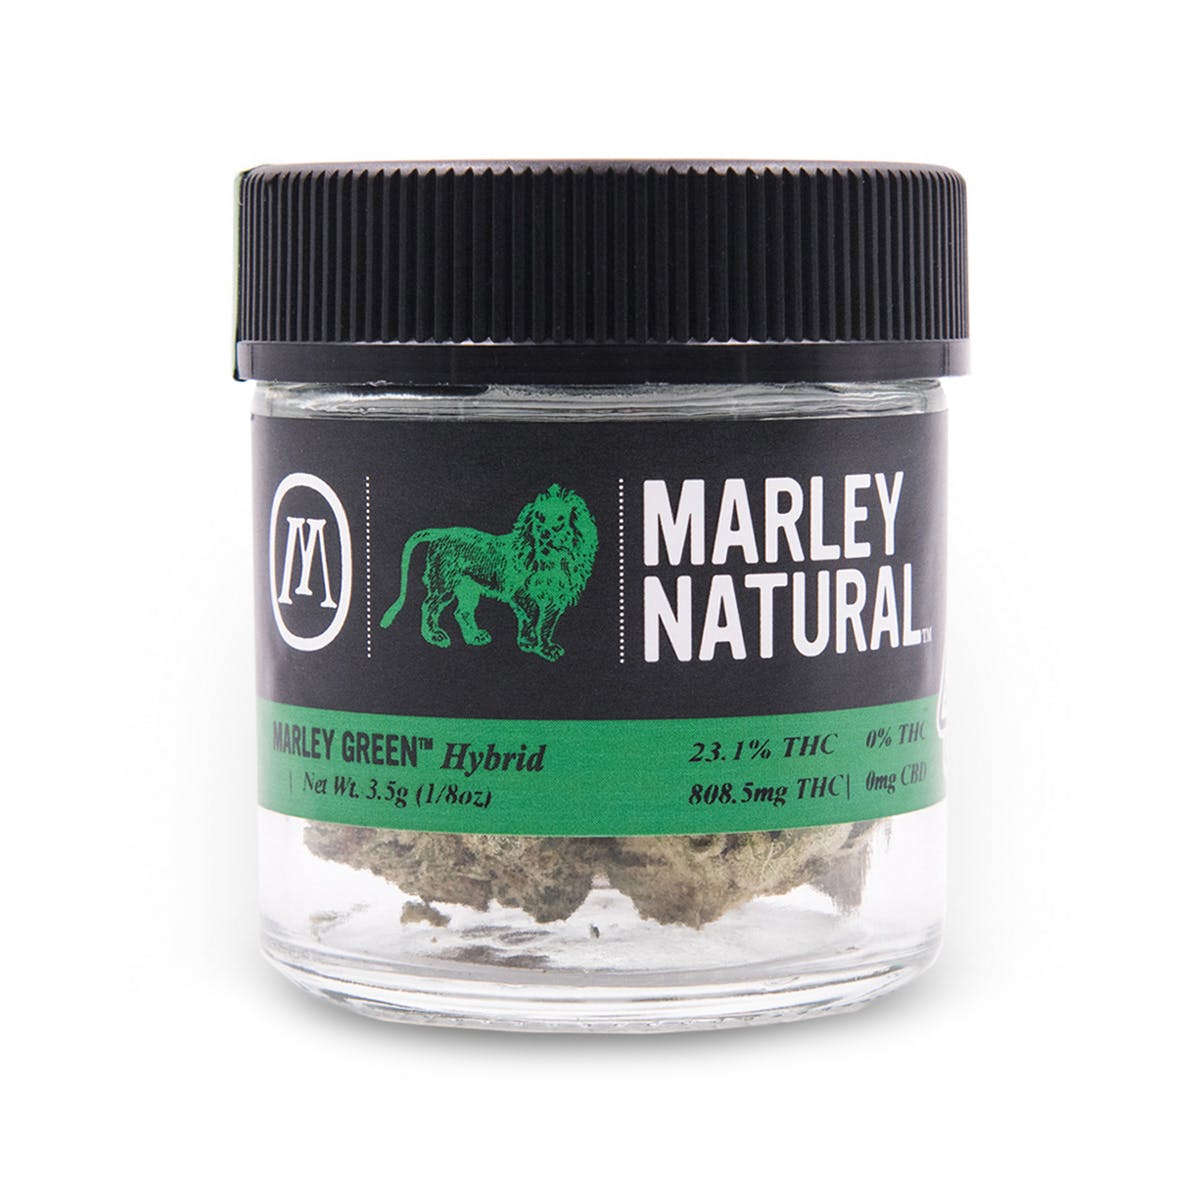 marijuana-dispensaries-25cap-van-nuys-solutions-in-van-nuys-marley-naturala-c2-84c-green-headband